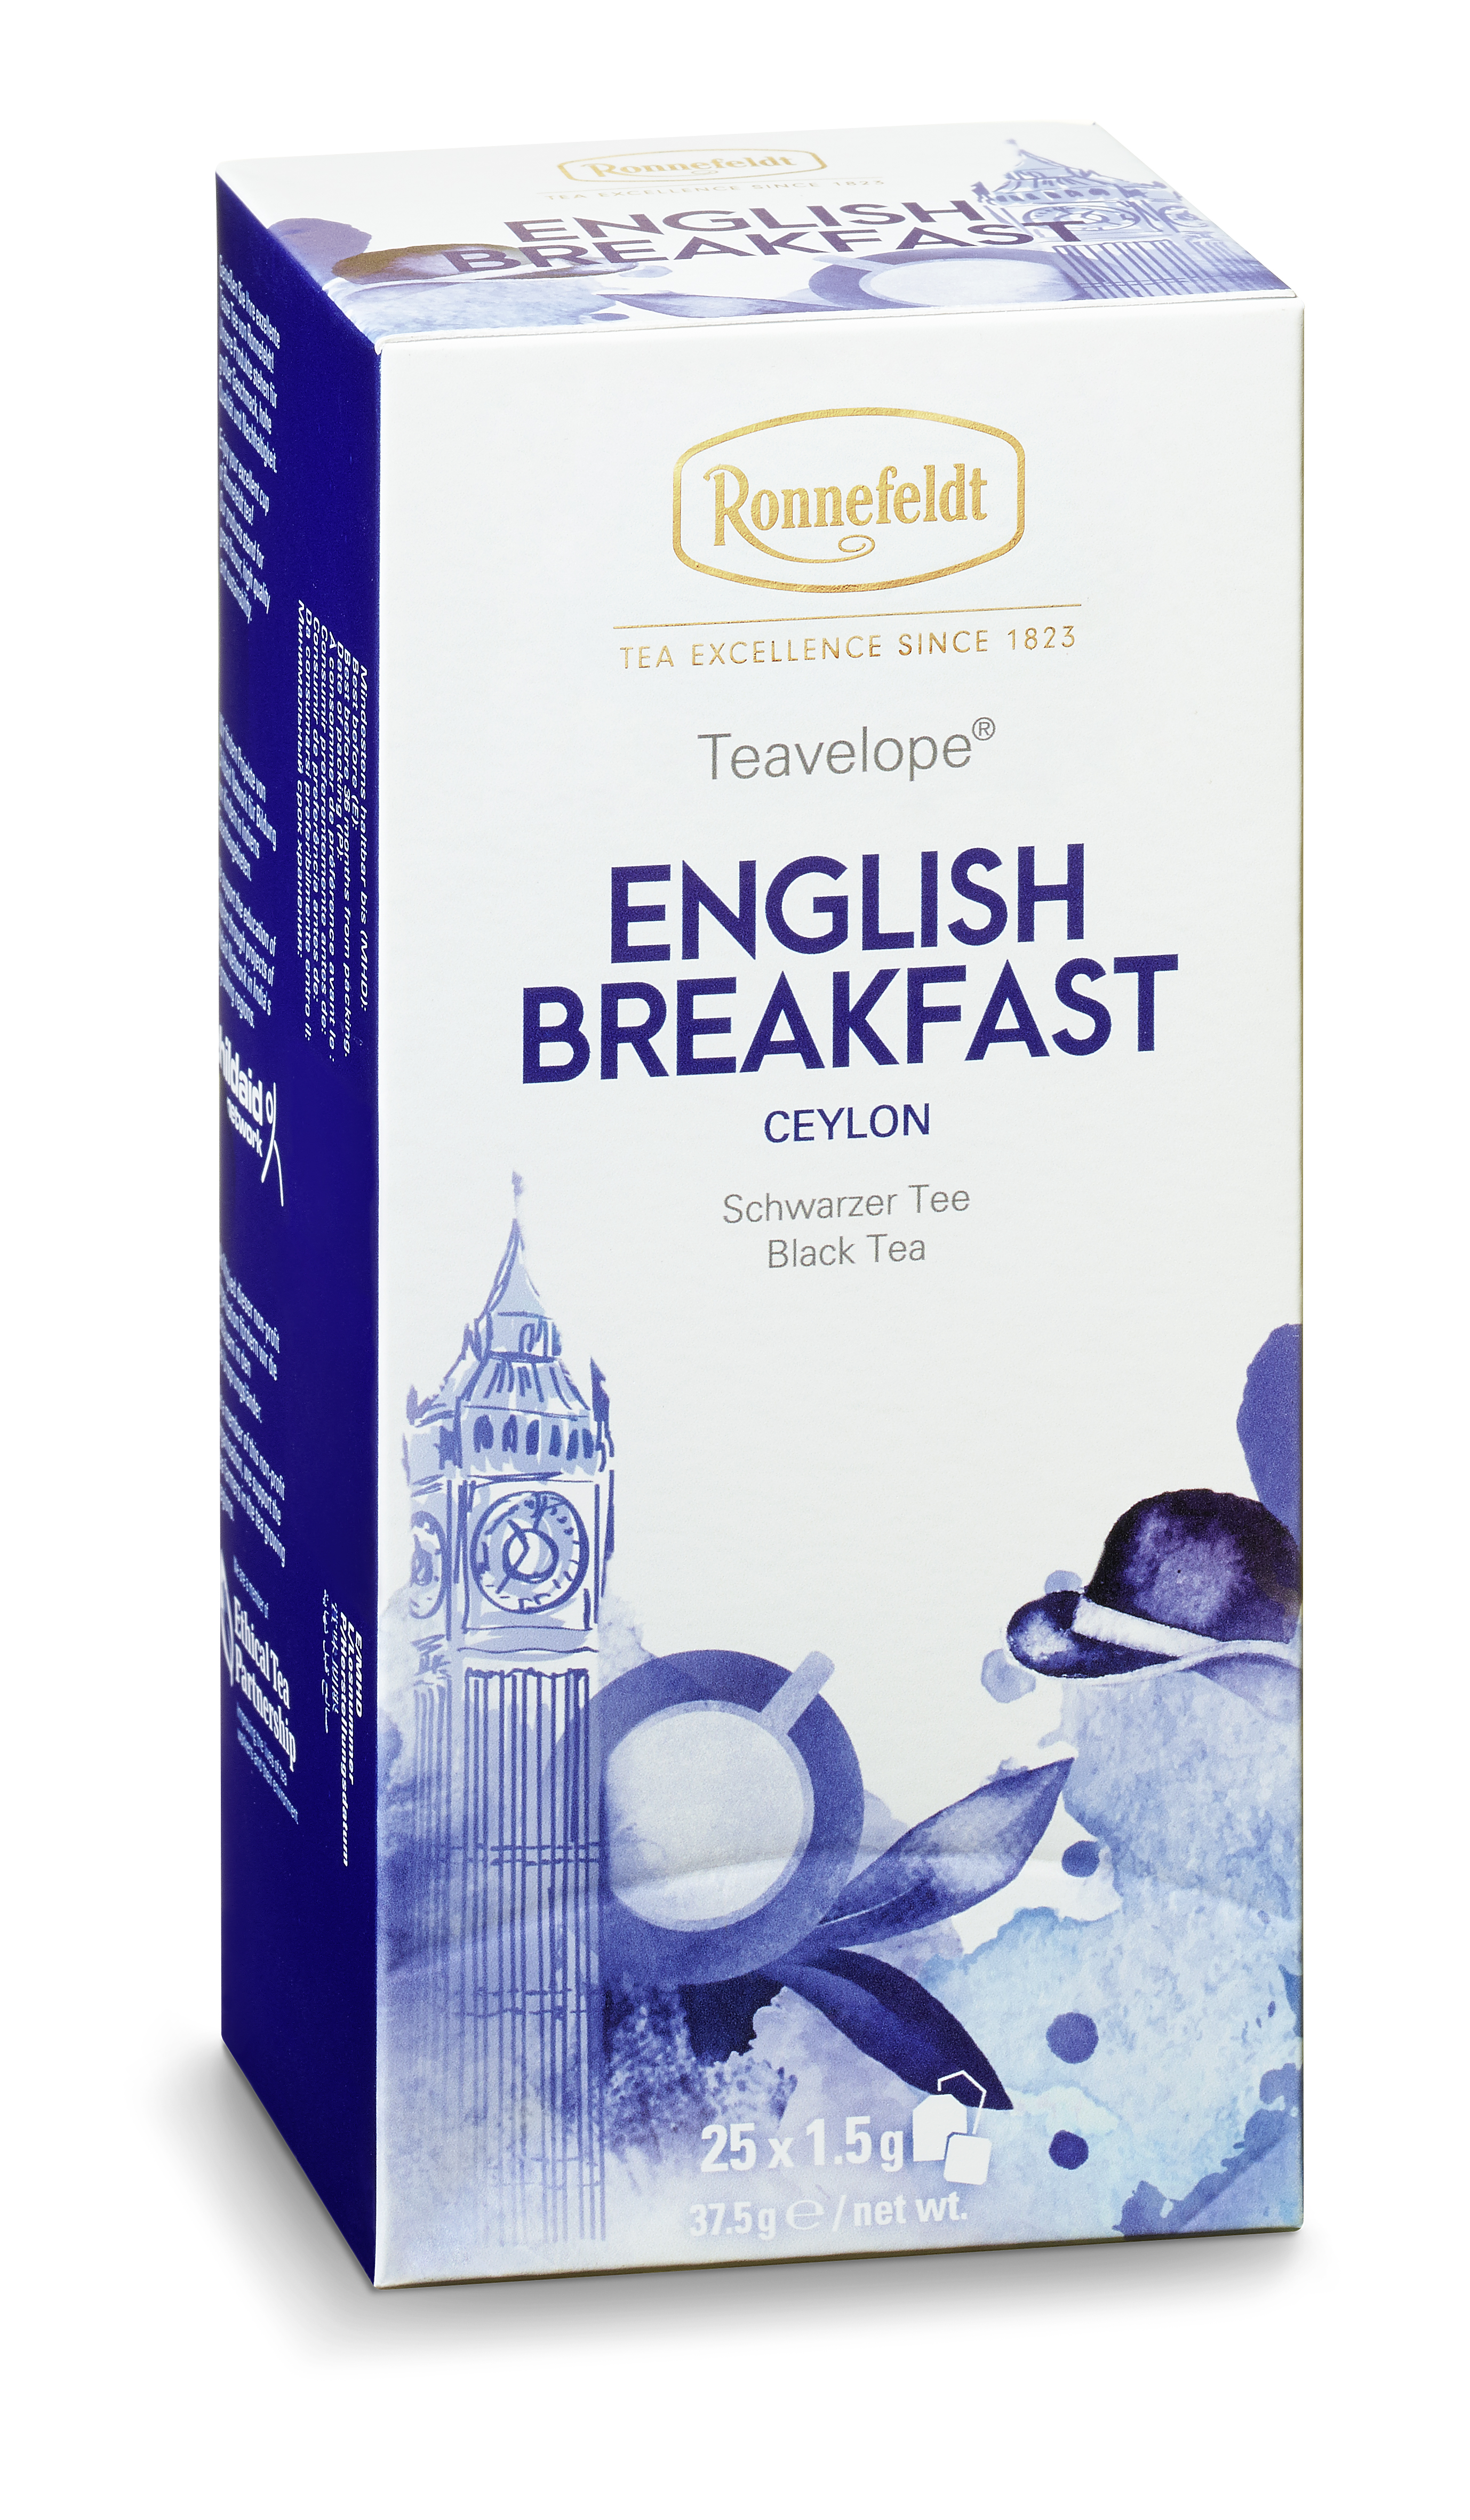 Teavelope English Breakfast Teabags